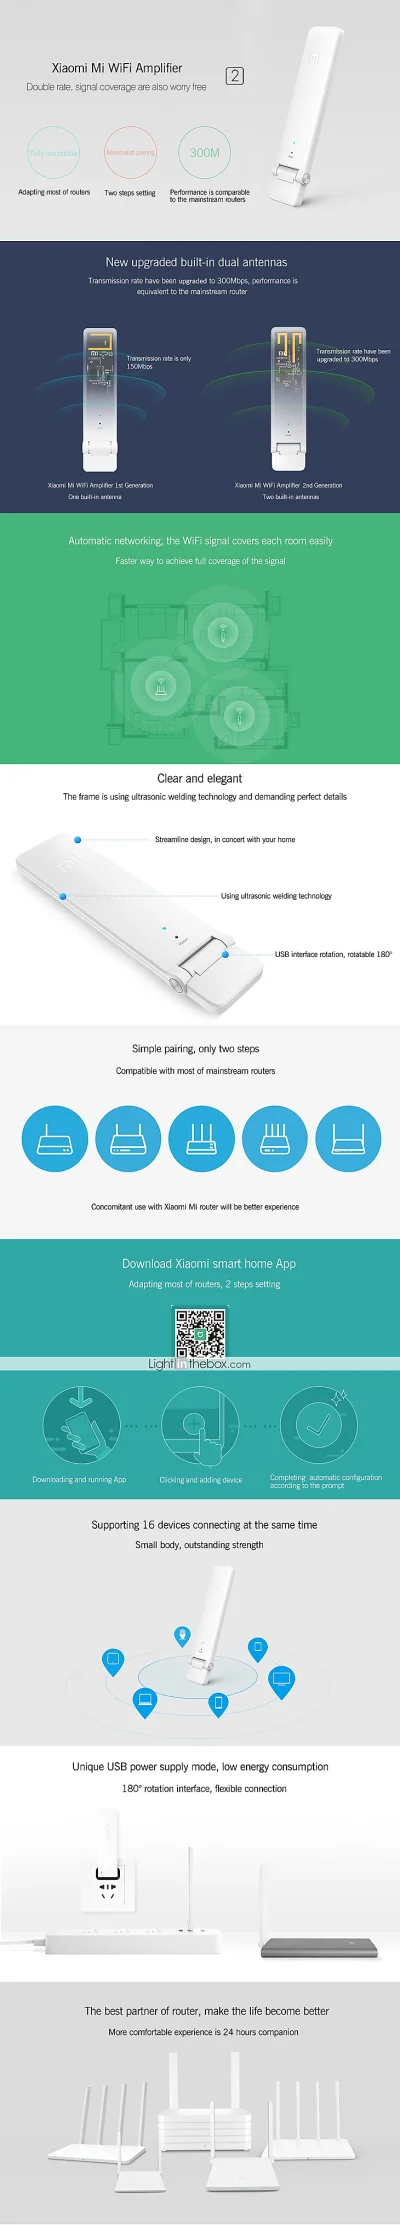 kontozielonki - Wzmacniacz Wi-Fi Xiaomi Amplifier 2 za 4,99$ z darmową wysyłką 

Wc...